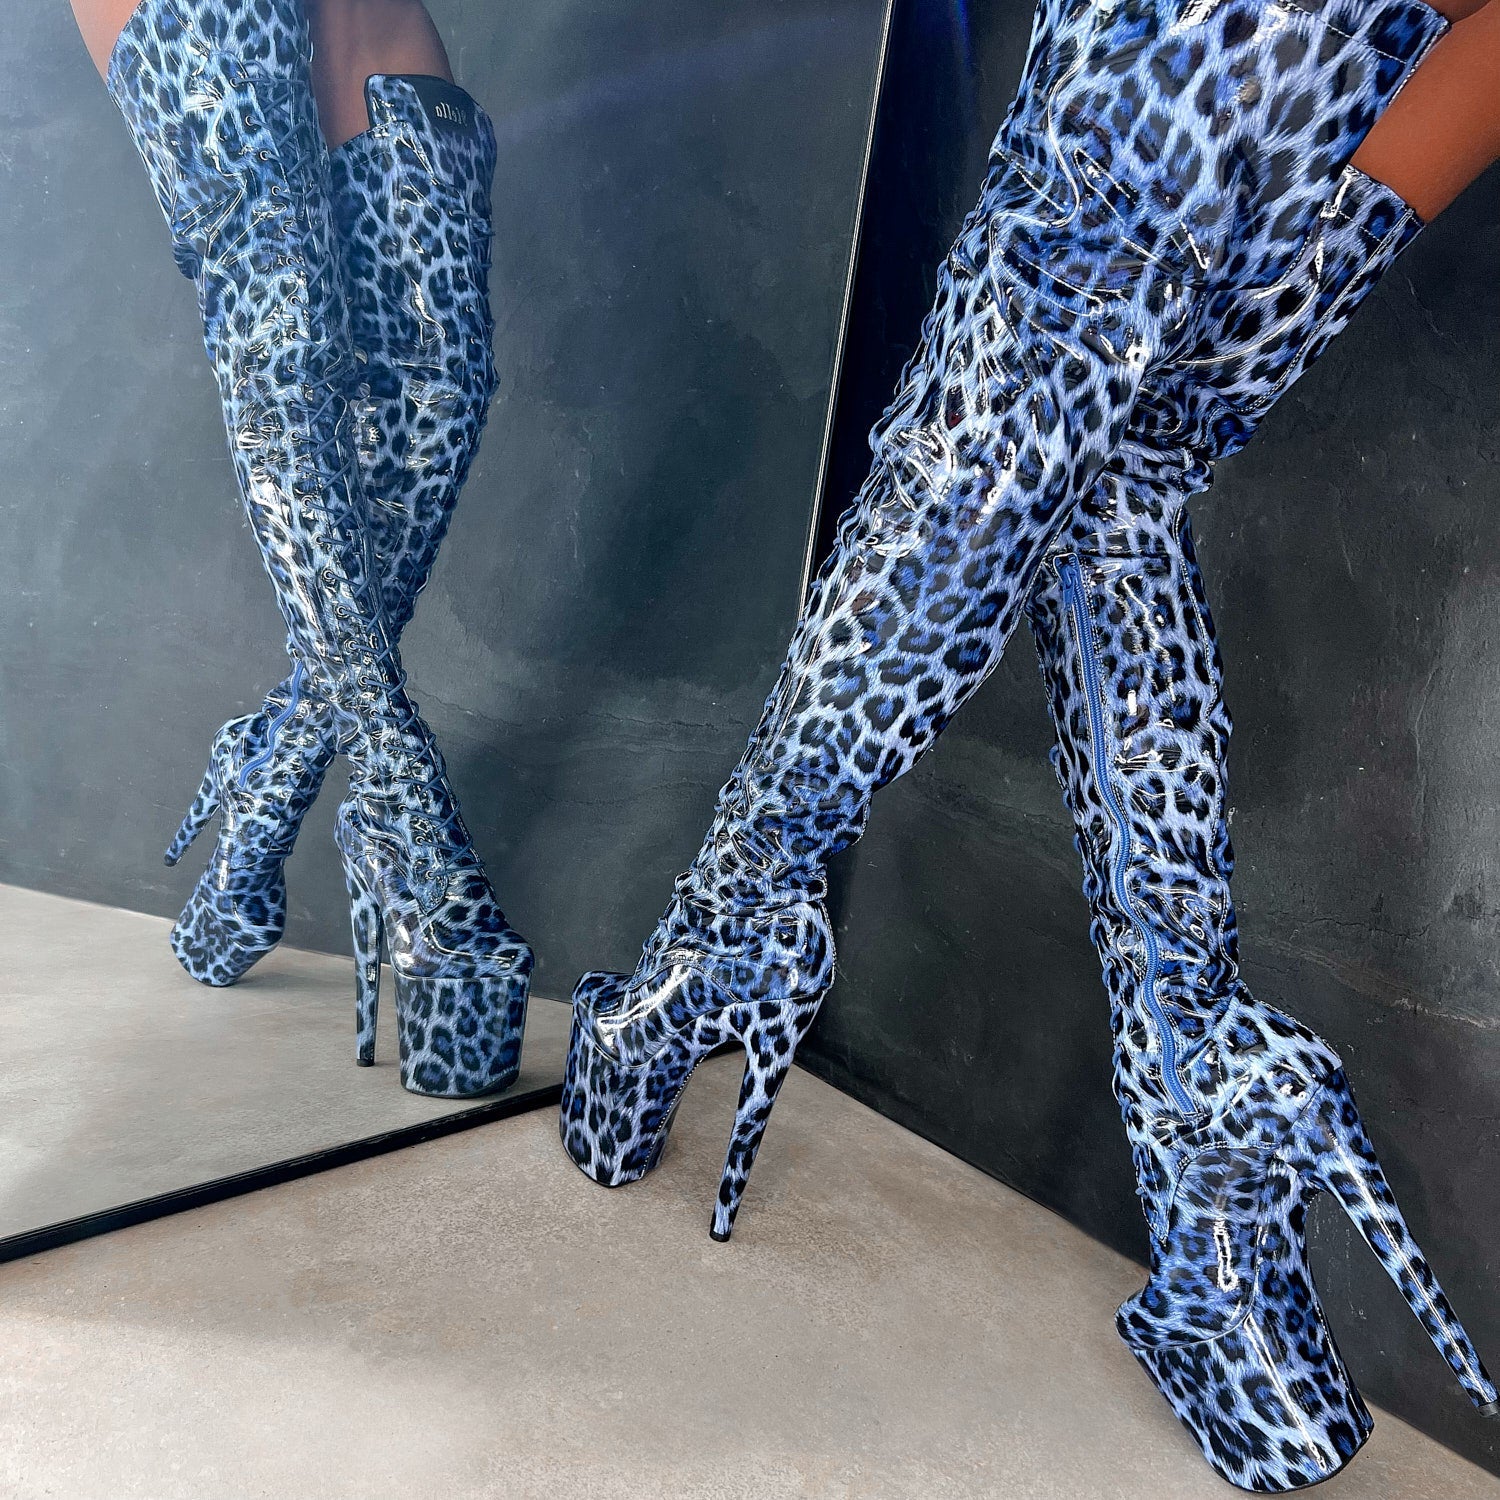 Blue Leopard Thigh High - 8 INCH + SP, stripper shoe, stripper heel, pole heel, not a pleaser, platform, dancer, pole dance, floor work